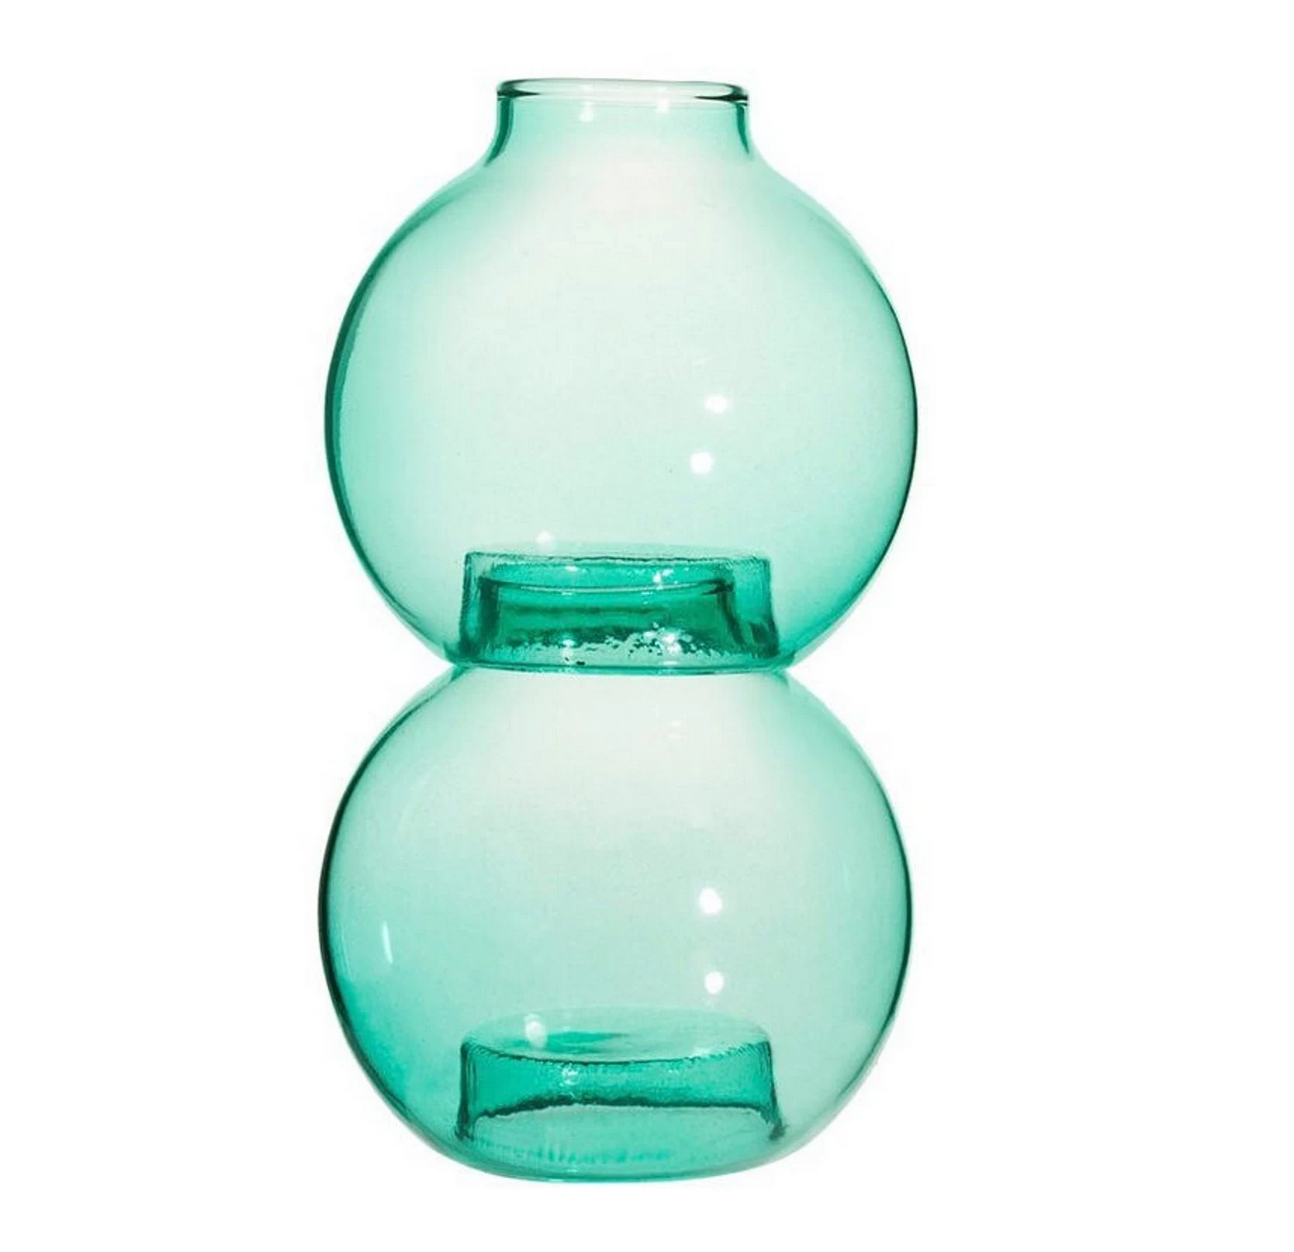 Bubble style stacking vase